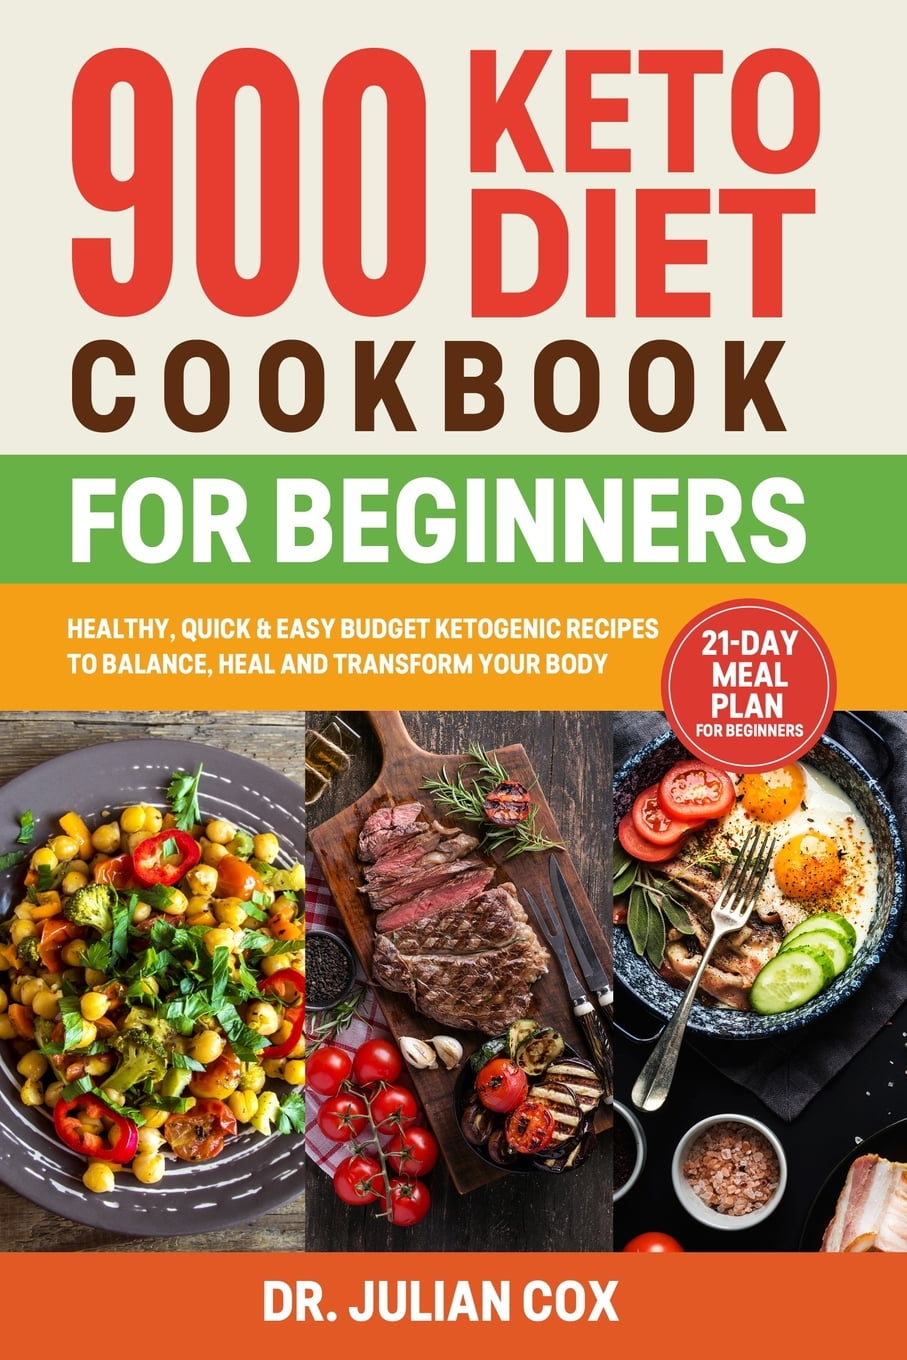 Keto Diet Books For Beginners Diet Keto Book Beginners